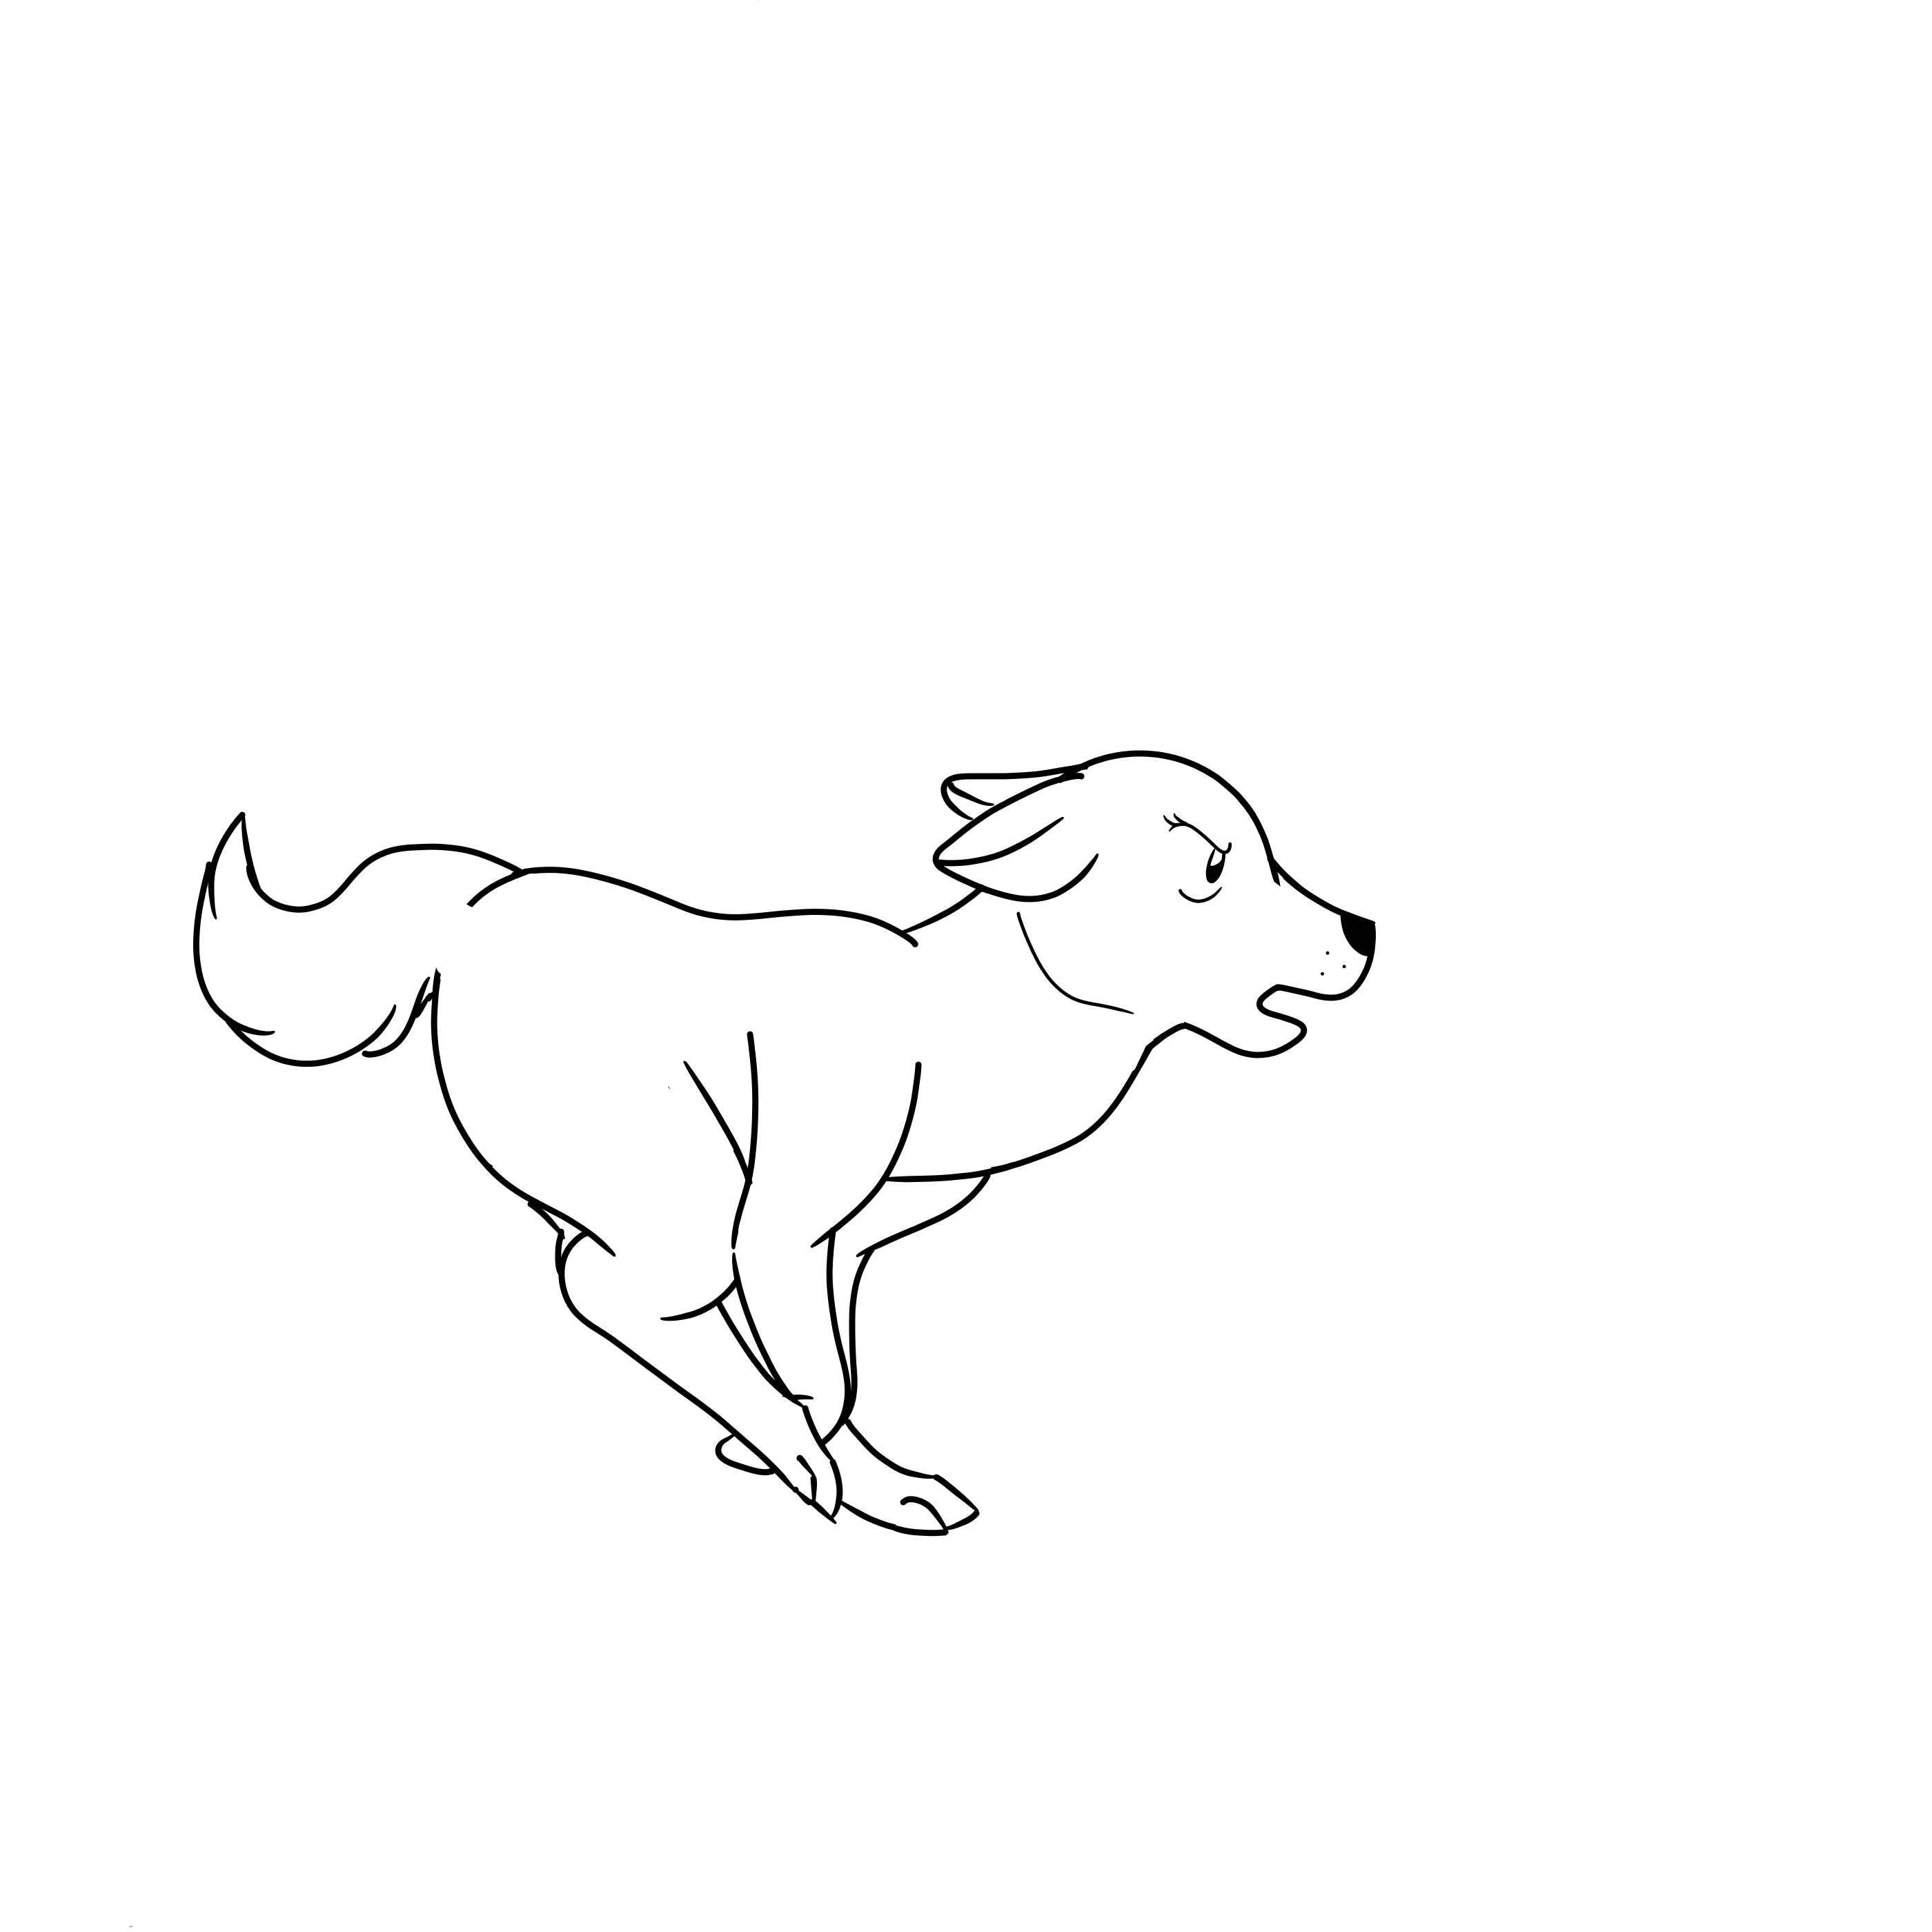 Ginga-Style Dog Running Animation by Flare2266 on DeviantArt